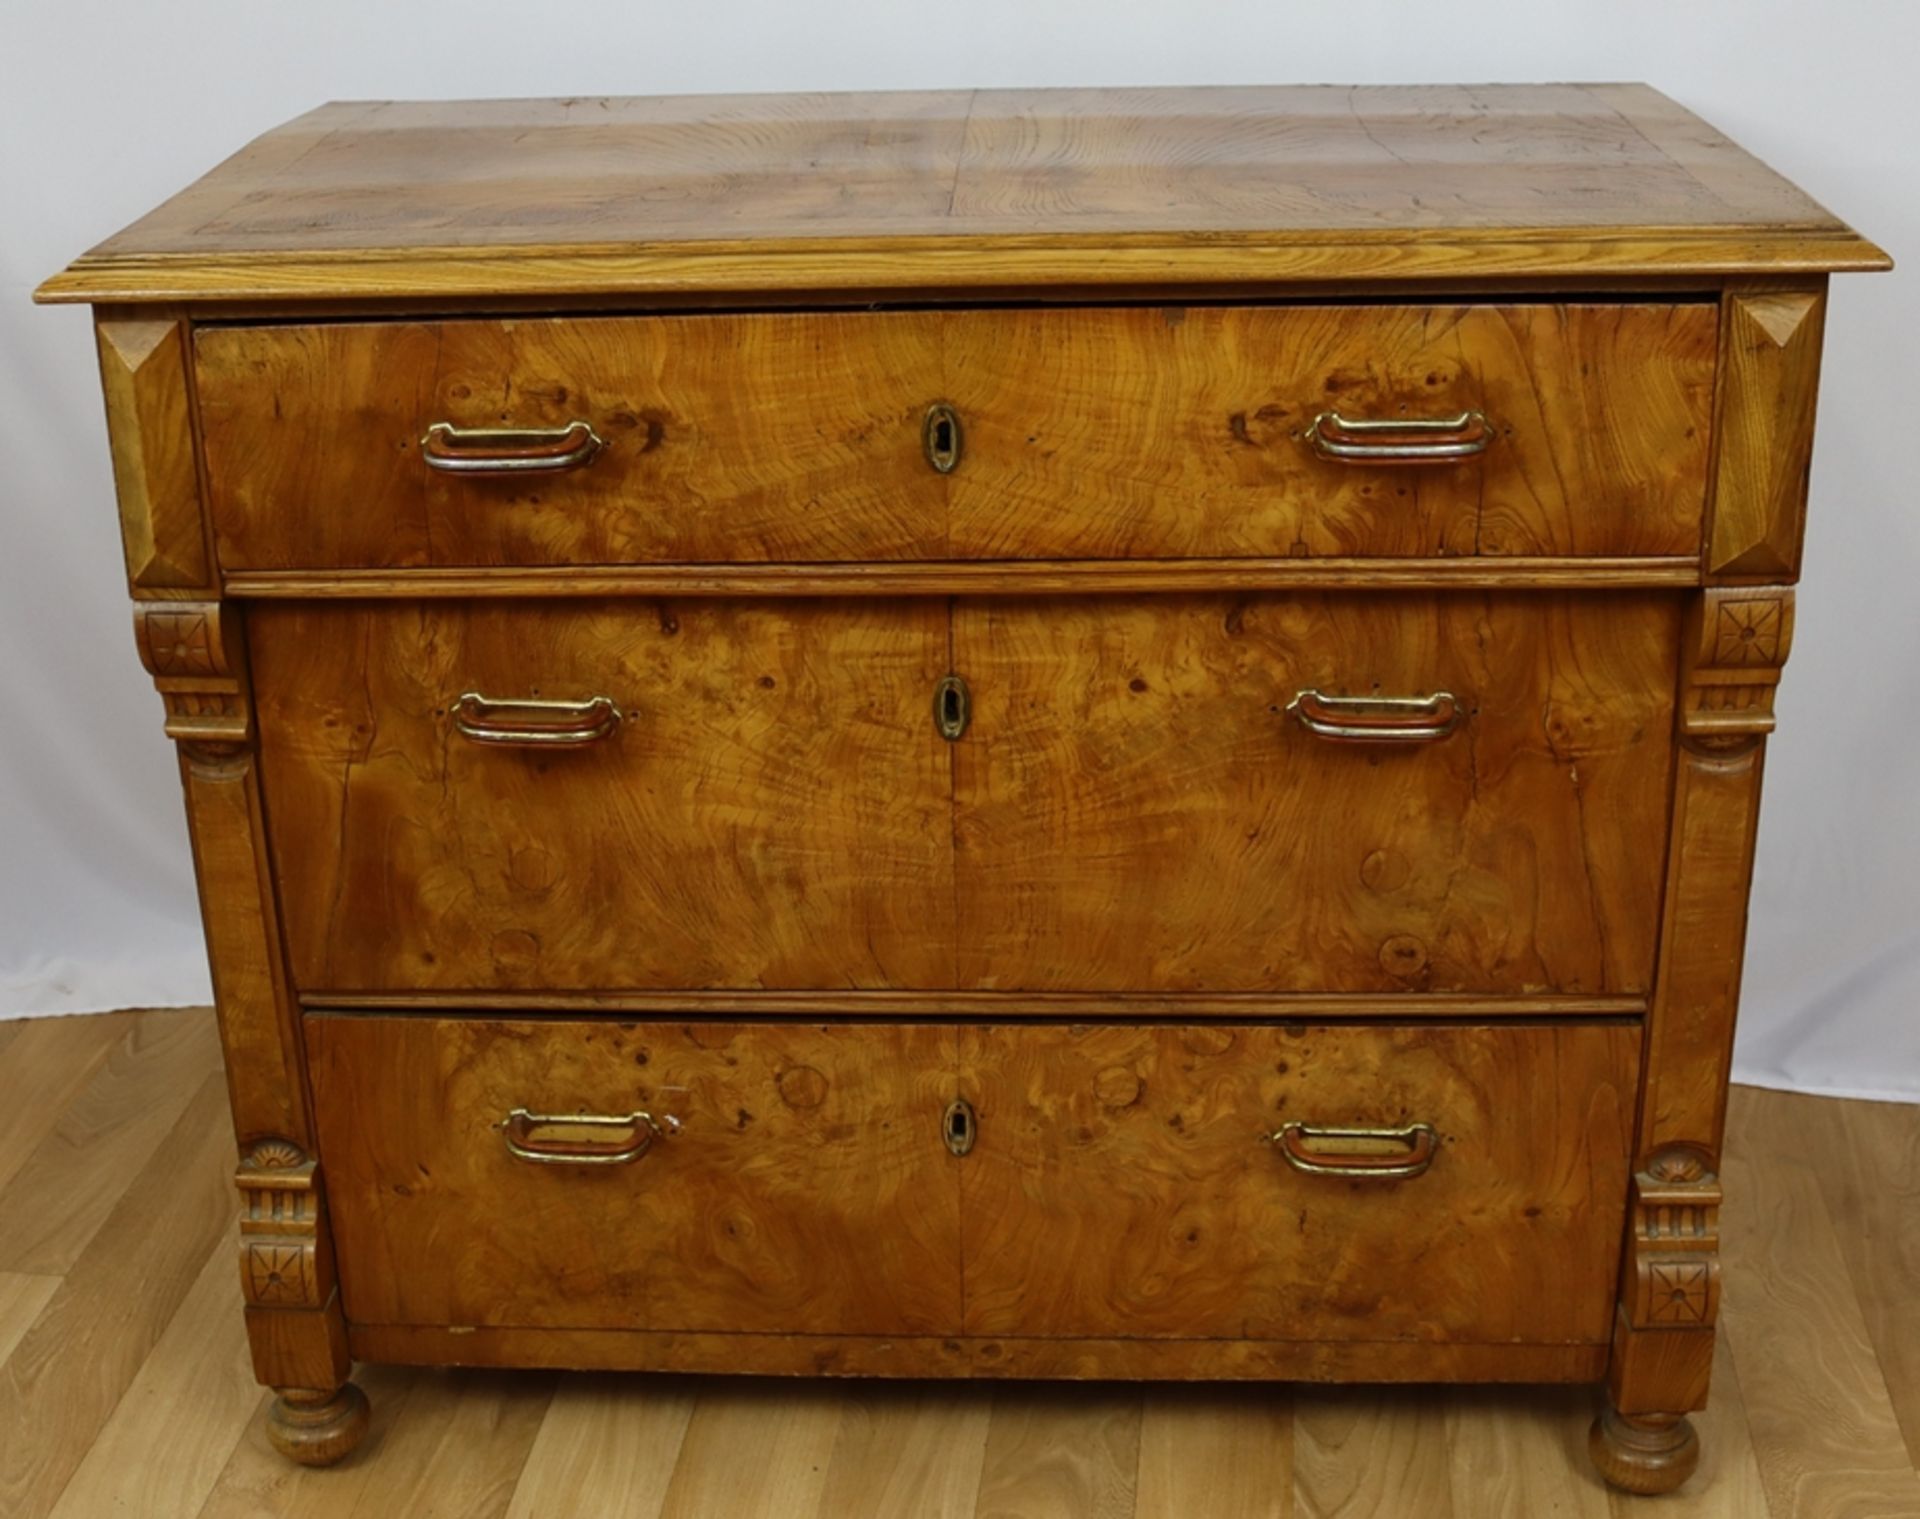 Gründerzeit chest of drawers, Historism circa 1880 - 1900, North German